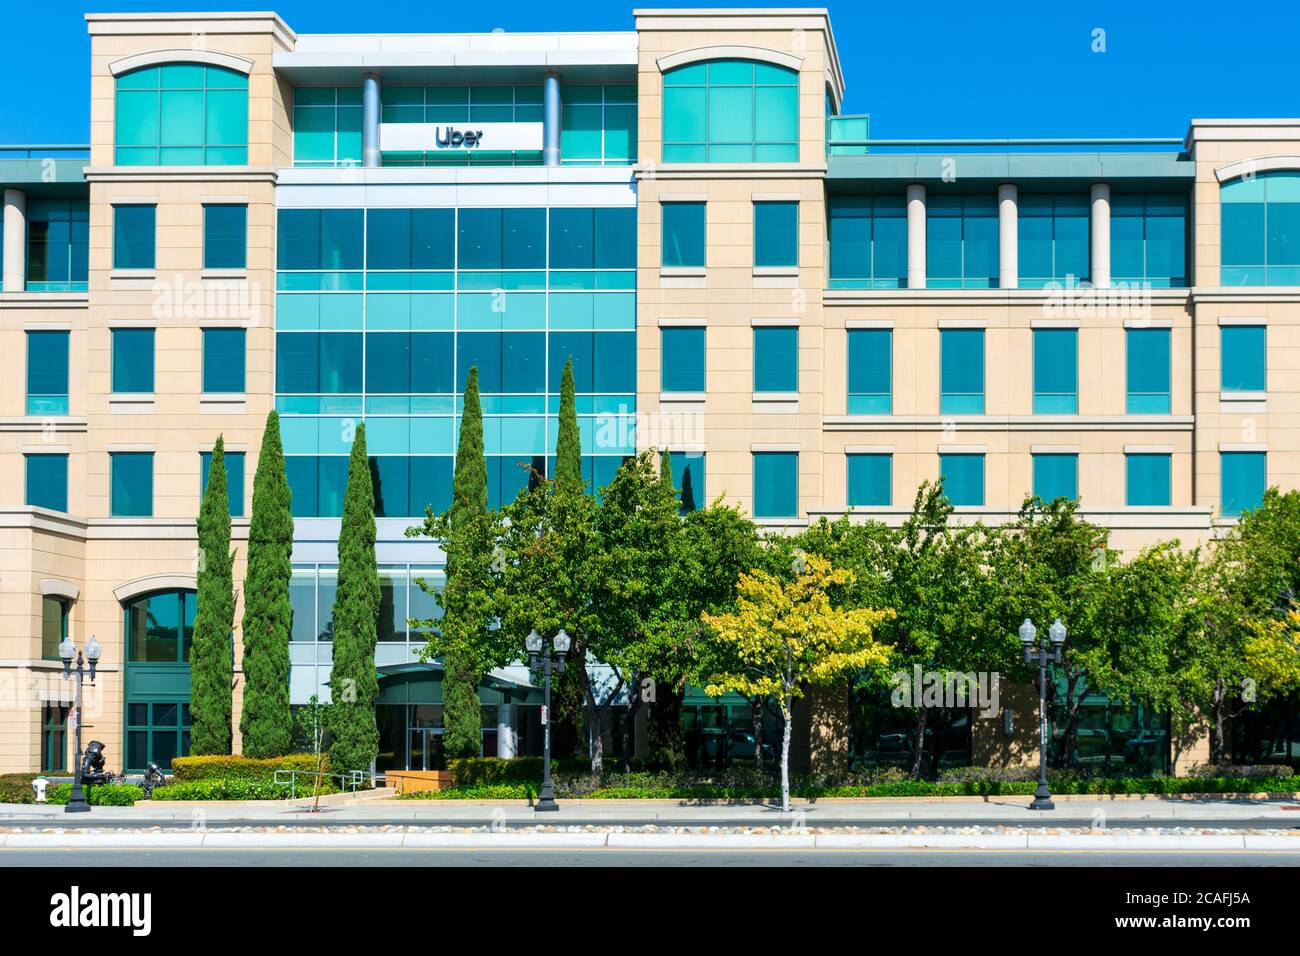 Campus de la Silicon Valley d'Uber. Basé à San Francisco Uber technologies est une compagnie multinationale américaine de transport de passagers - Sunnyvale, Californie, USA - 202 Banque D'Images